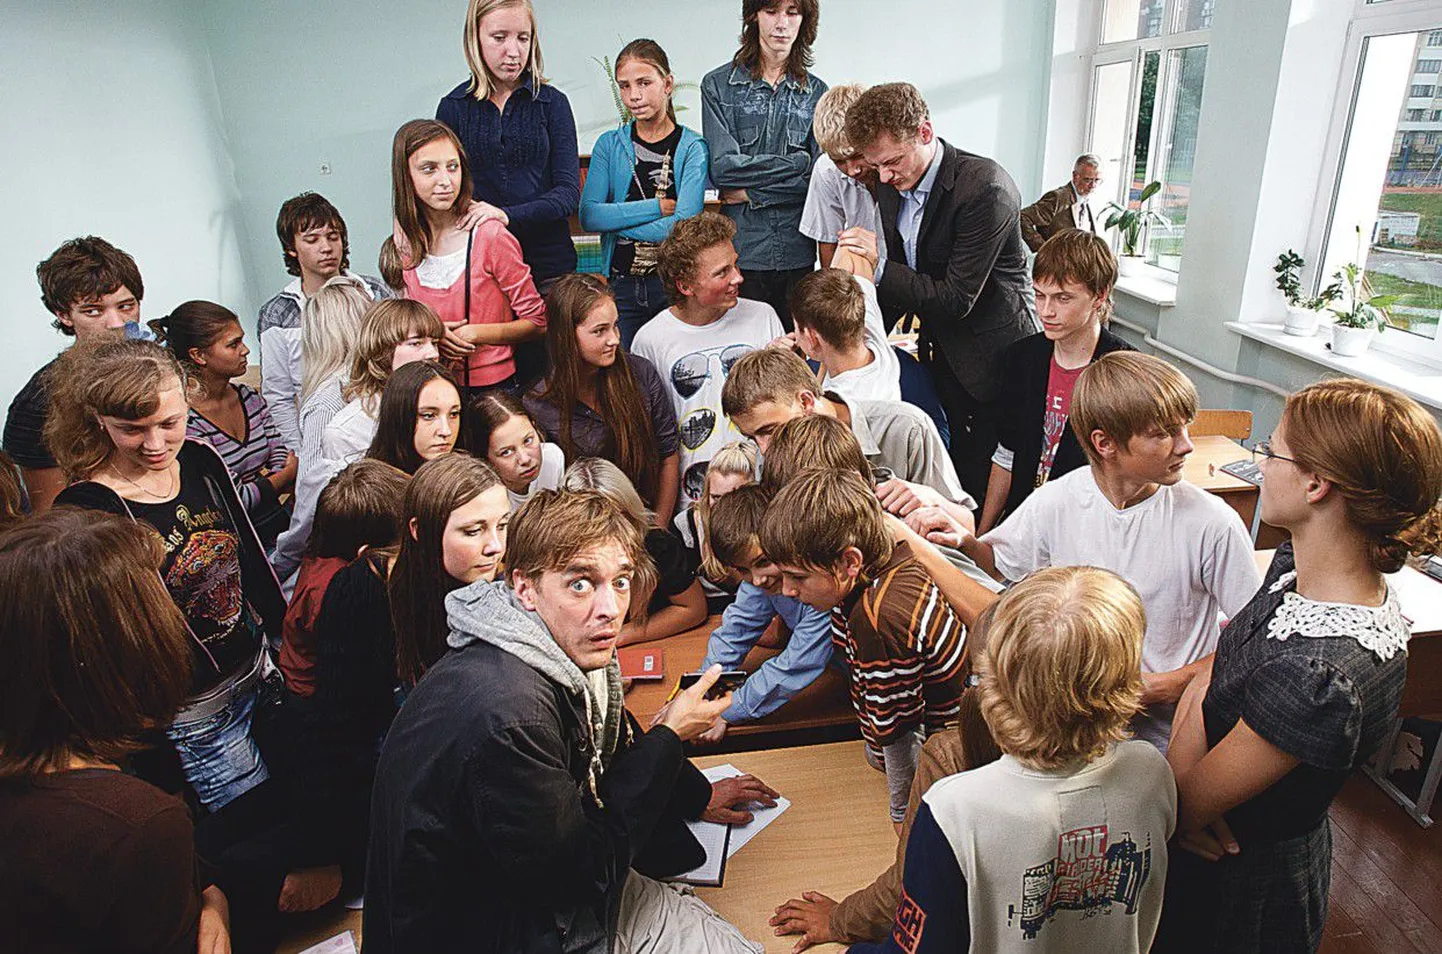 Момент съемок: Юхан Ульфсак знакомится с белорусскими детьми, которые примут участие в съемках.